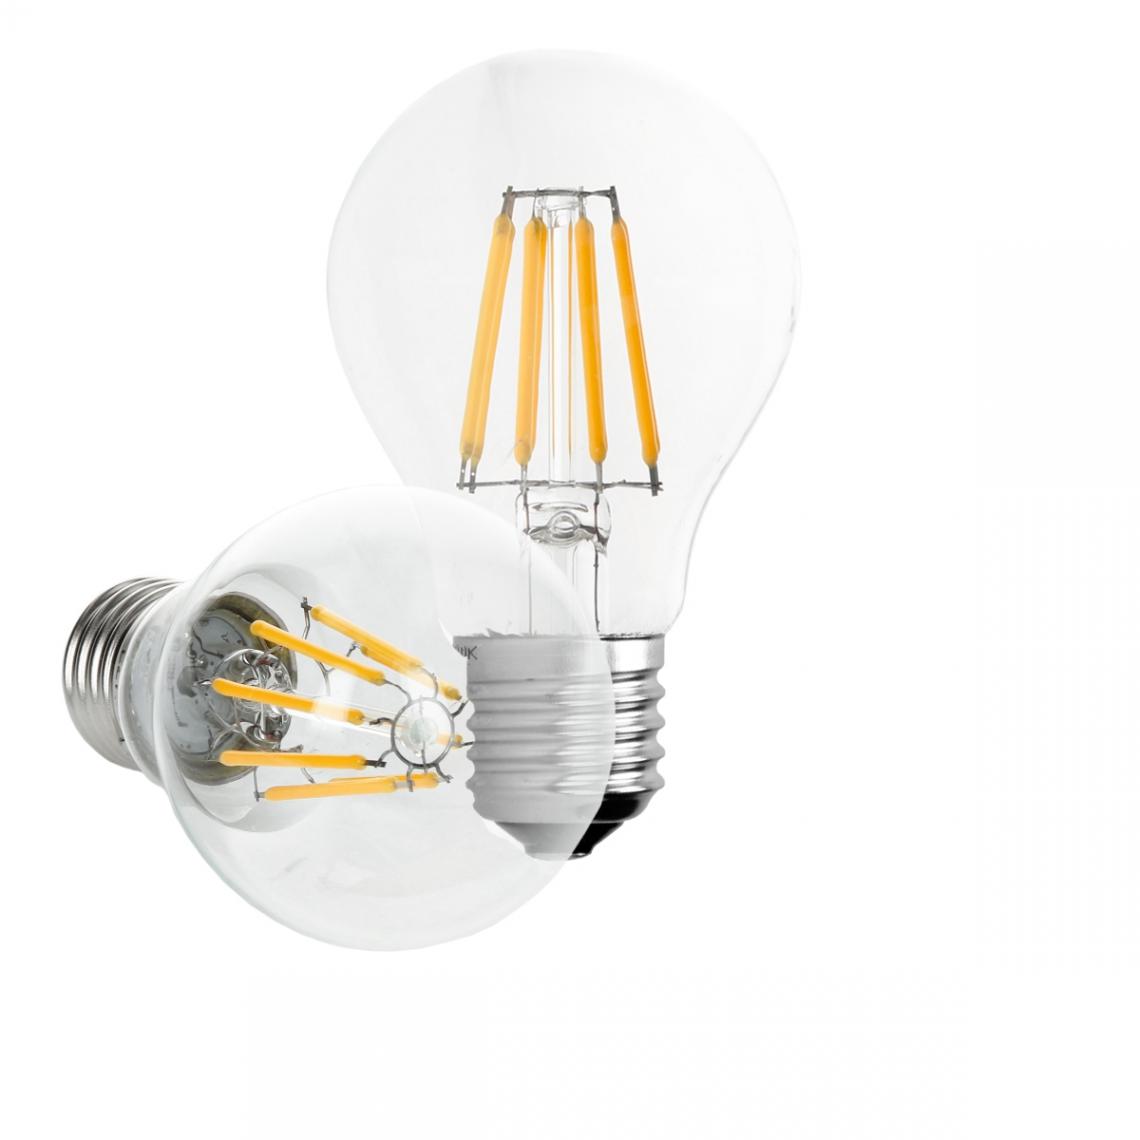 Ecd Germany - ECD Germany 1 x LED Filament de l'ampoule E27 classique Edison 8W 816 lumens angle de faisceau 120 ° AC 220-240 reste caché et remplace environ 45W lampe incandescente blanc chaud - Ampoules LED